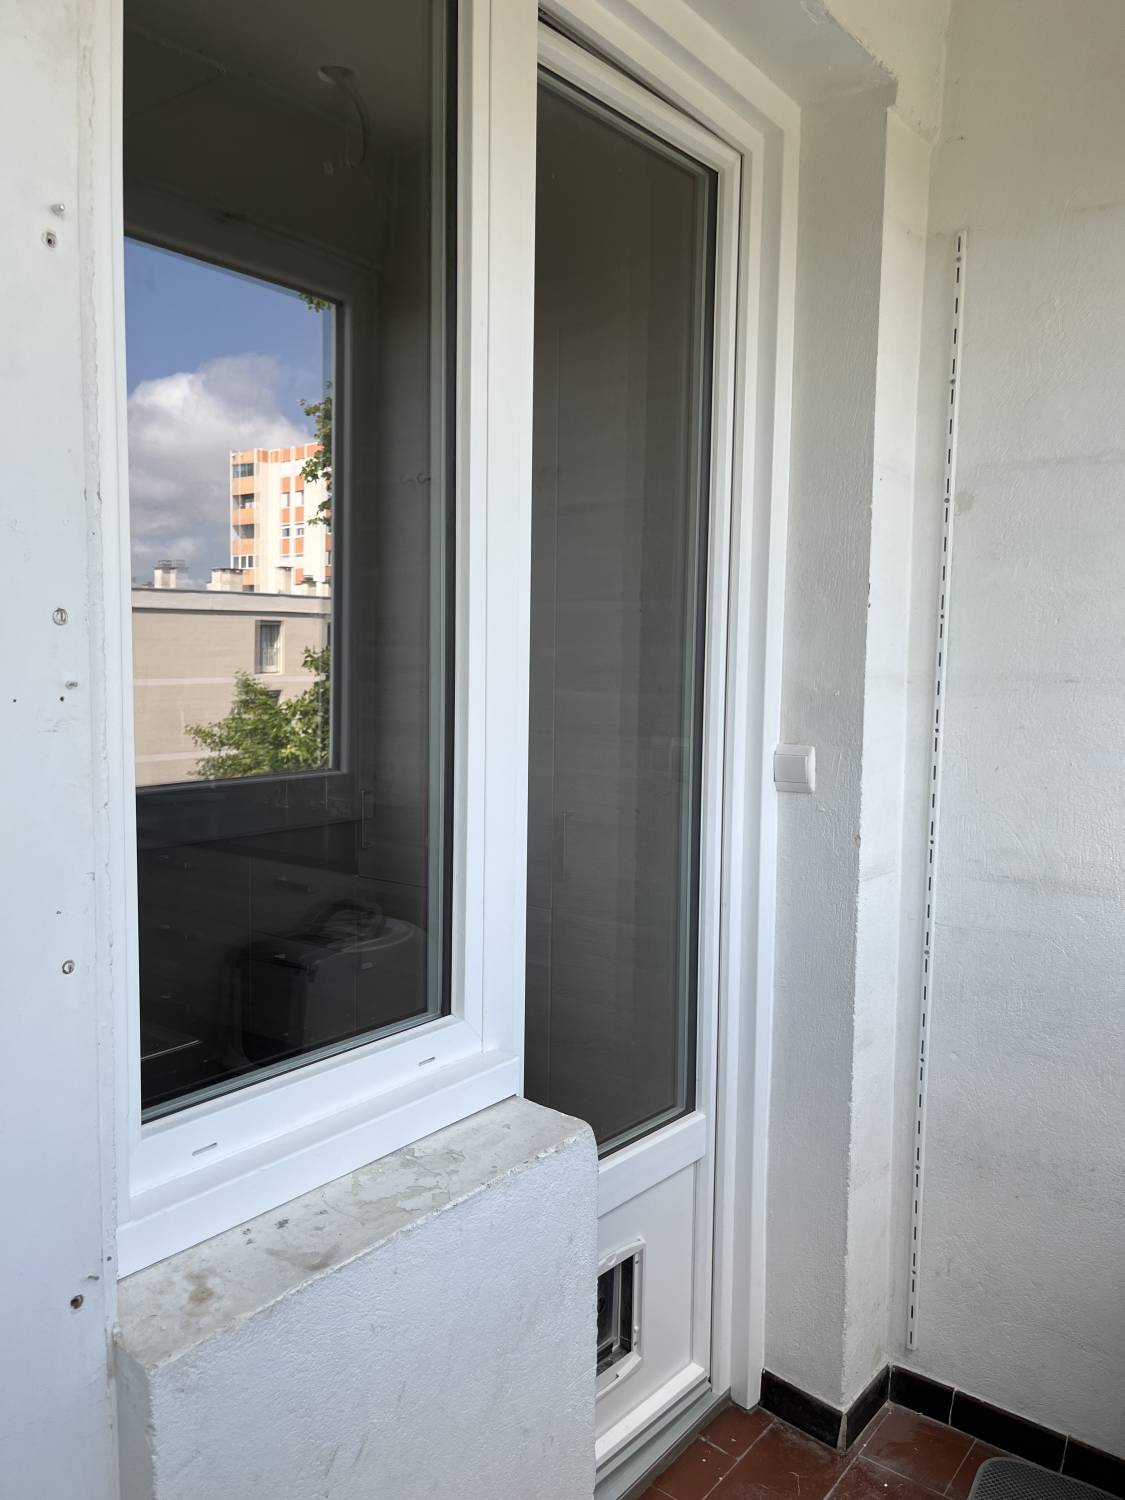 Remplacement d’une porte-fenêtre 1 vantail oscillo-battante et soubassement plein en PVC sur Avignon, avec chatière et châssis fixe vitré